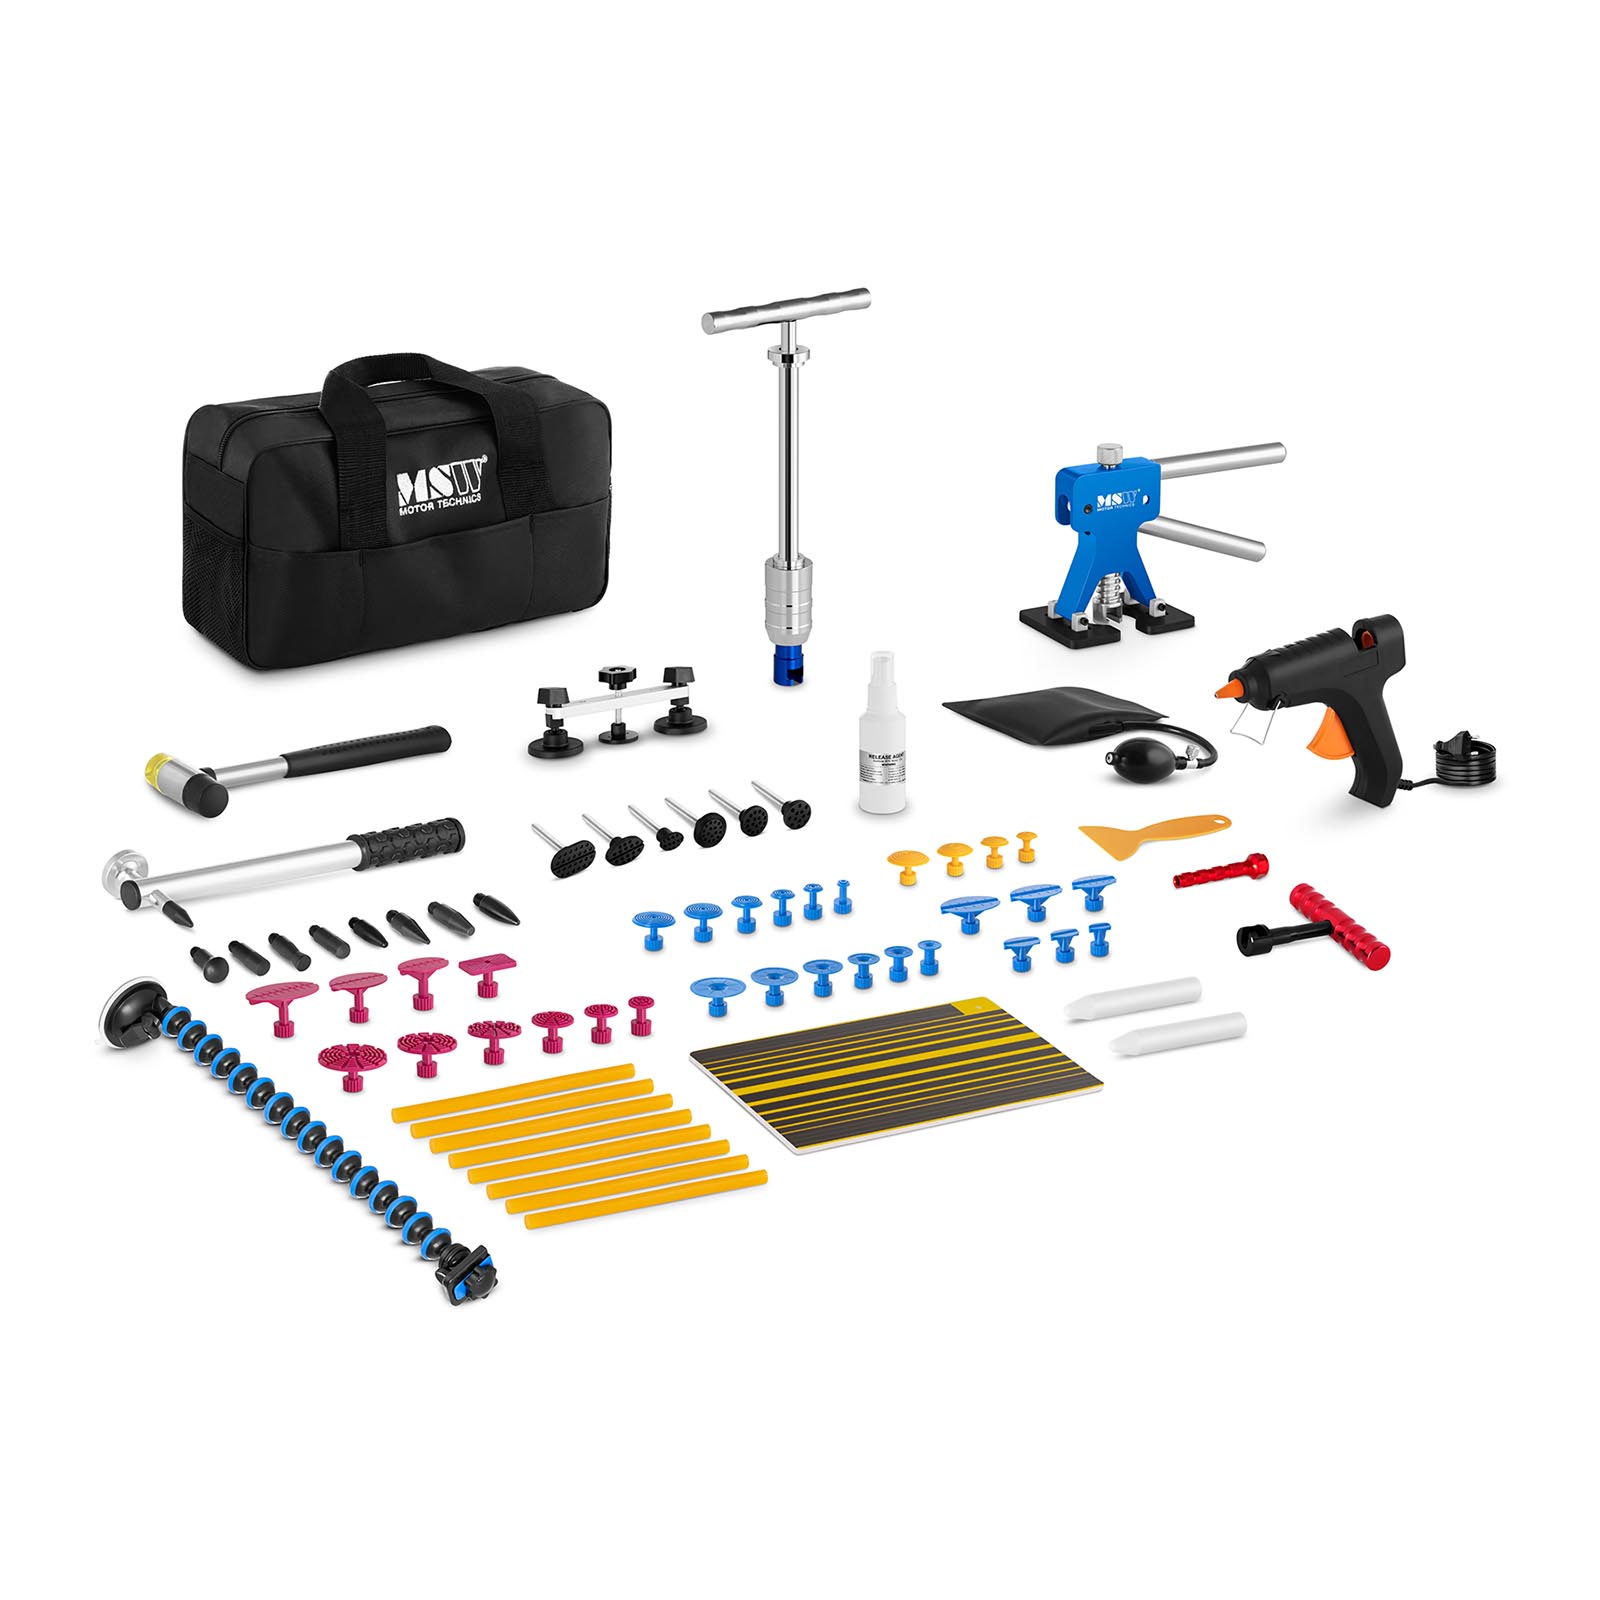 Kit de herramientas para reparar abolladuras - 70 piezas